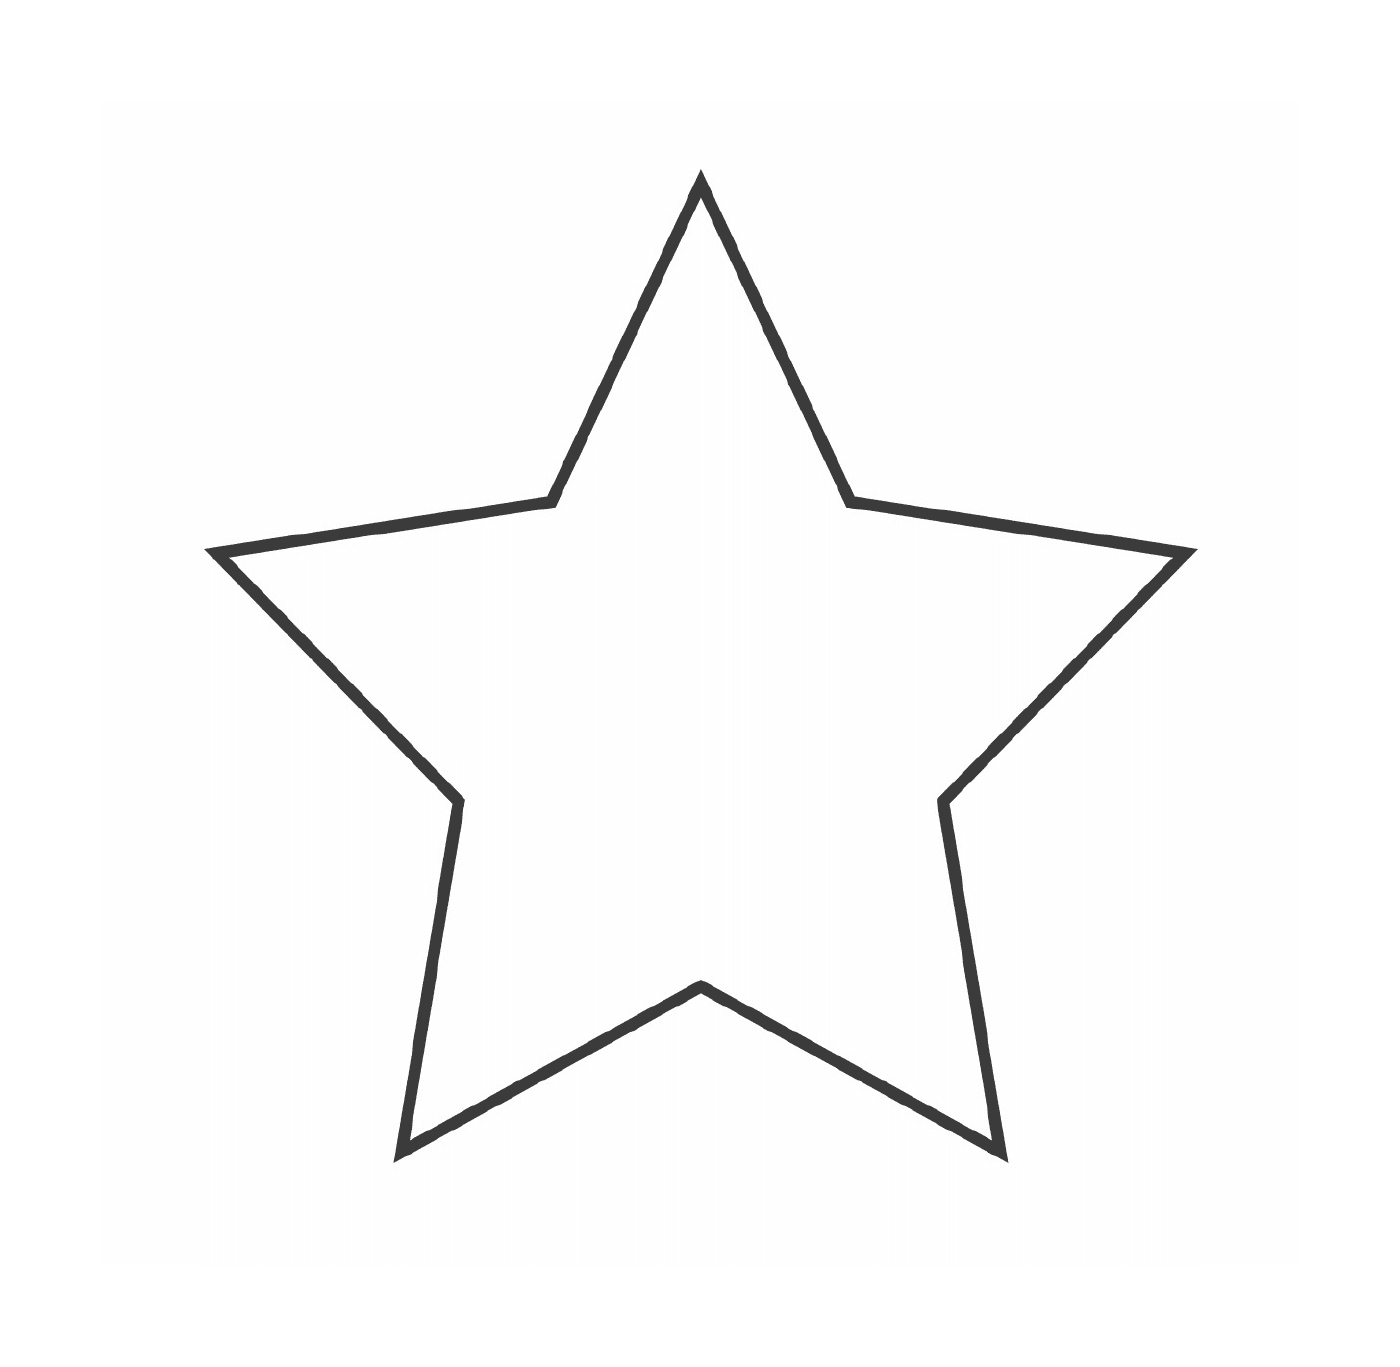   Une étoile à cinq branches 